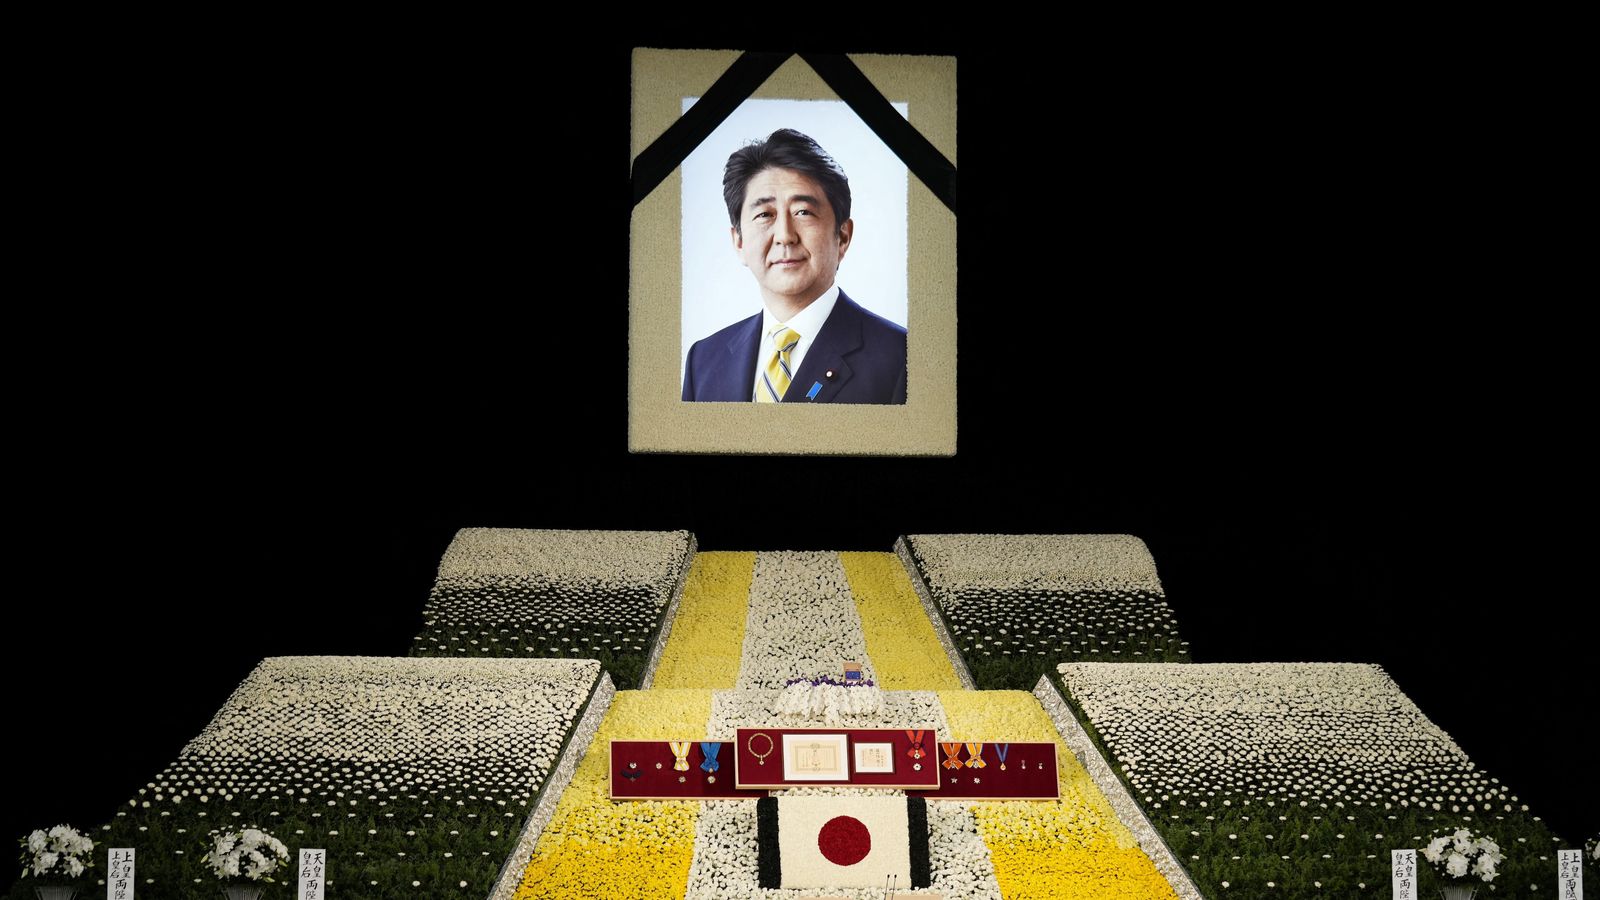 Les dirigeants mondiaux se réunissent au Japon pour les funérailles nationales de Shinzo Abe au milieu des protestations contre l’événement |  Nouvelles du monde